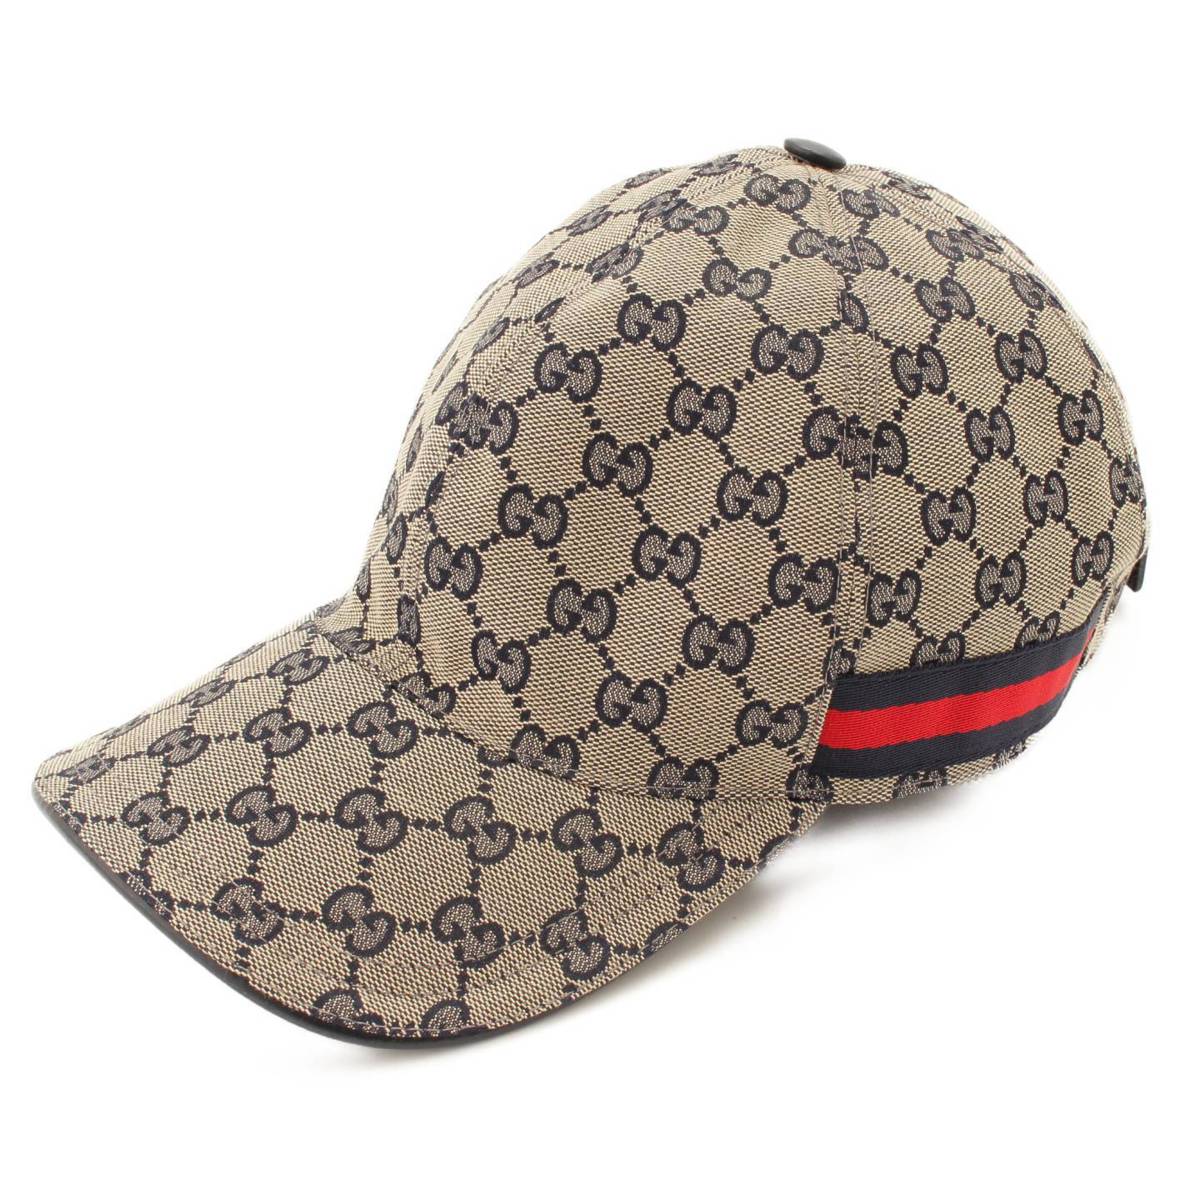 グッチ(Gucci) GGキャンバス ベースボールキャップ 帽子 200035 グレー×ネイビー L59